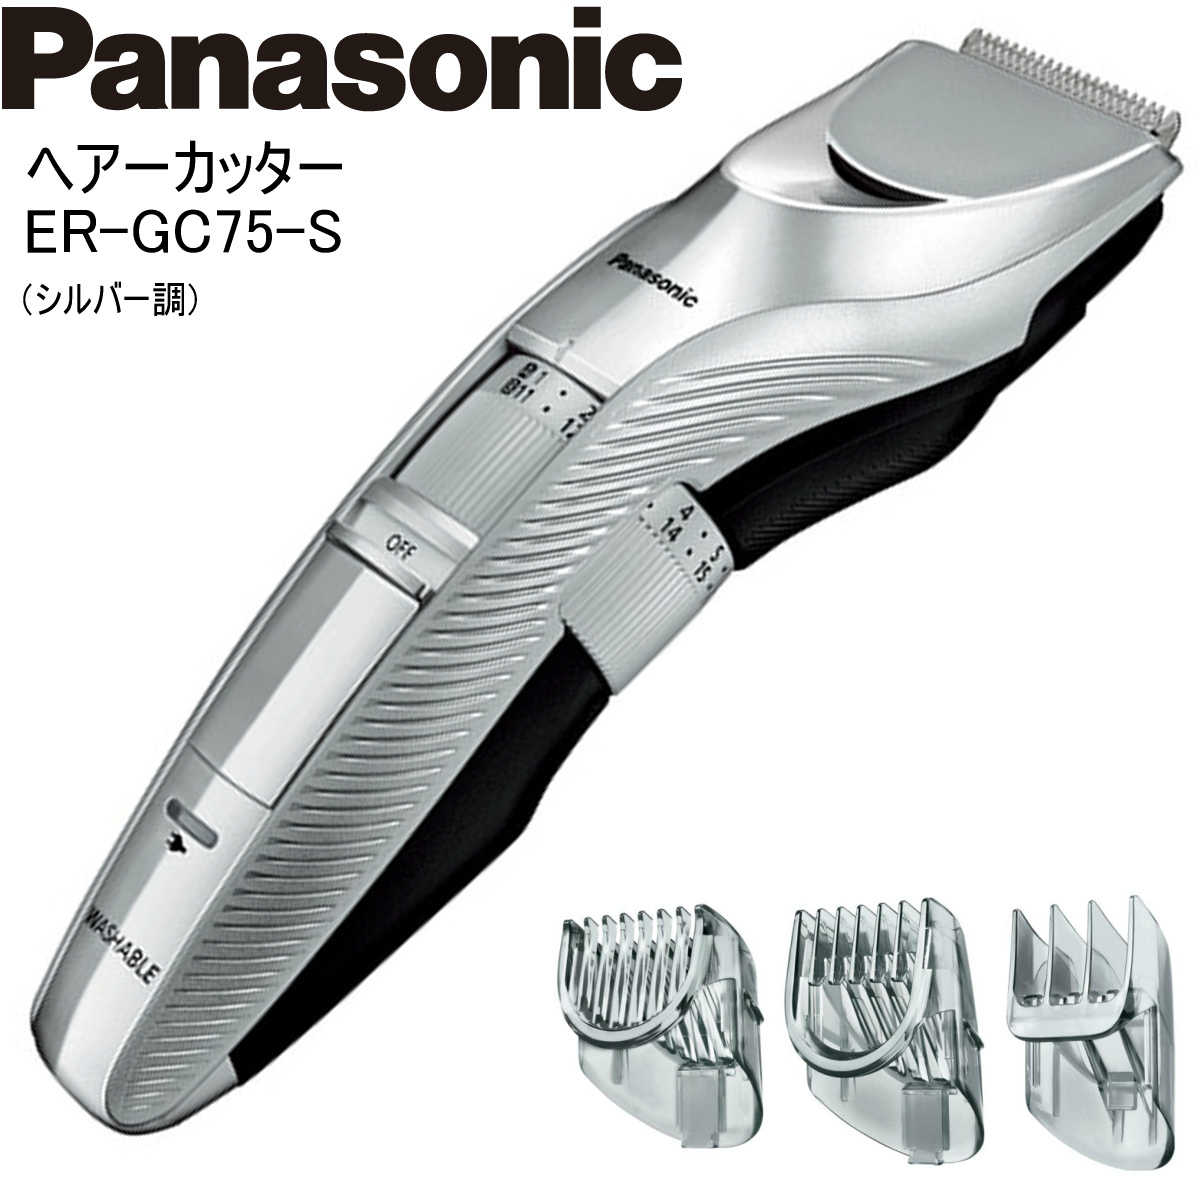 Panasonic パナソニック ヘアーカッター ER-GC75-S シルバー調 